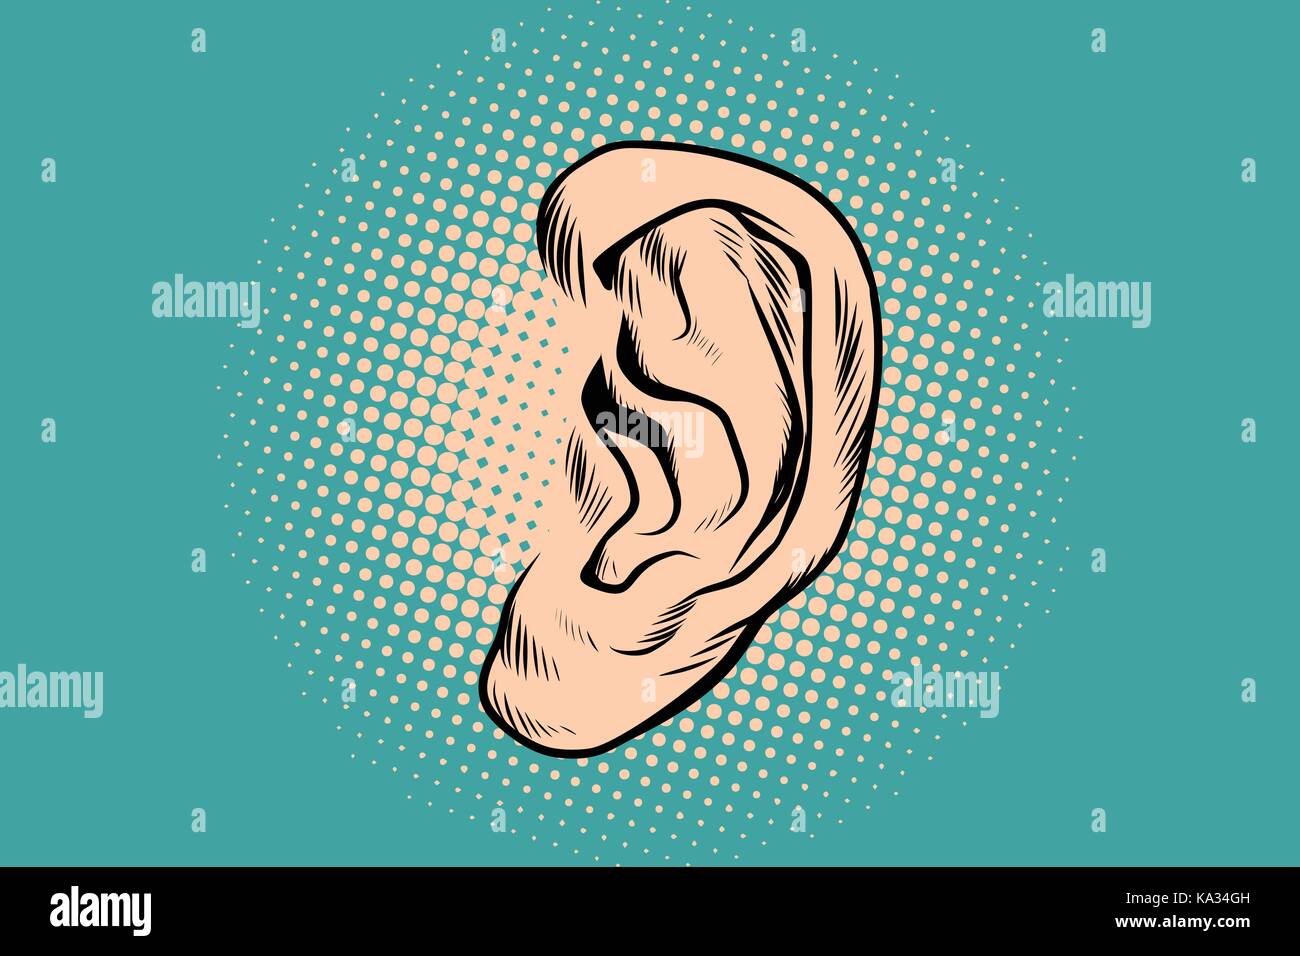 El oído humano masculino pop art retro Ilustración del Vector